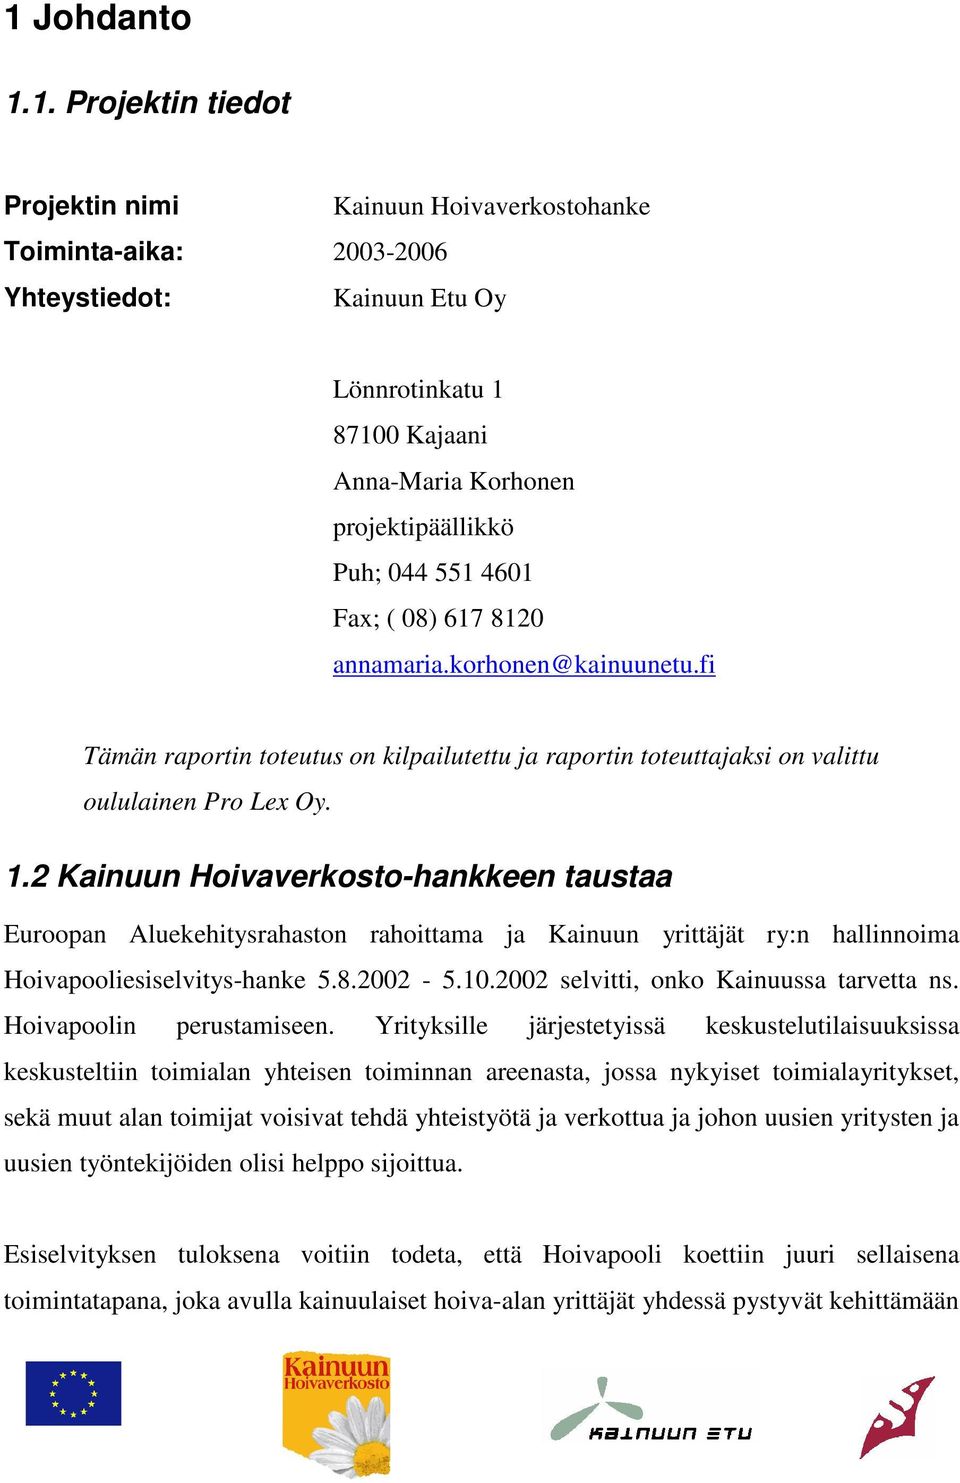 2 Kainuun Hoivaverkosto-hankkeen taustaa Euroopan Aluekehitysrahaston rahoittama ja Kainuun yrittäjät ry:n hallinnoima Hoivapooliesiselvitys-hanke 5.8.2002-5.10.